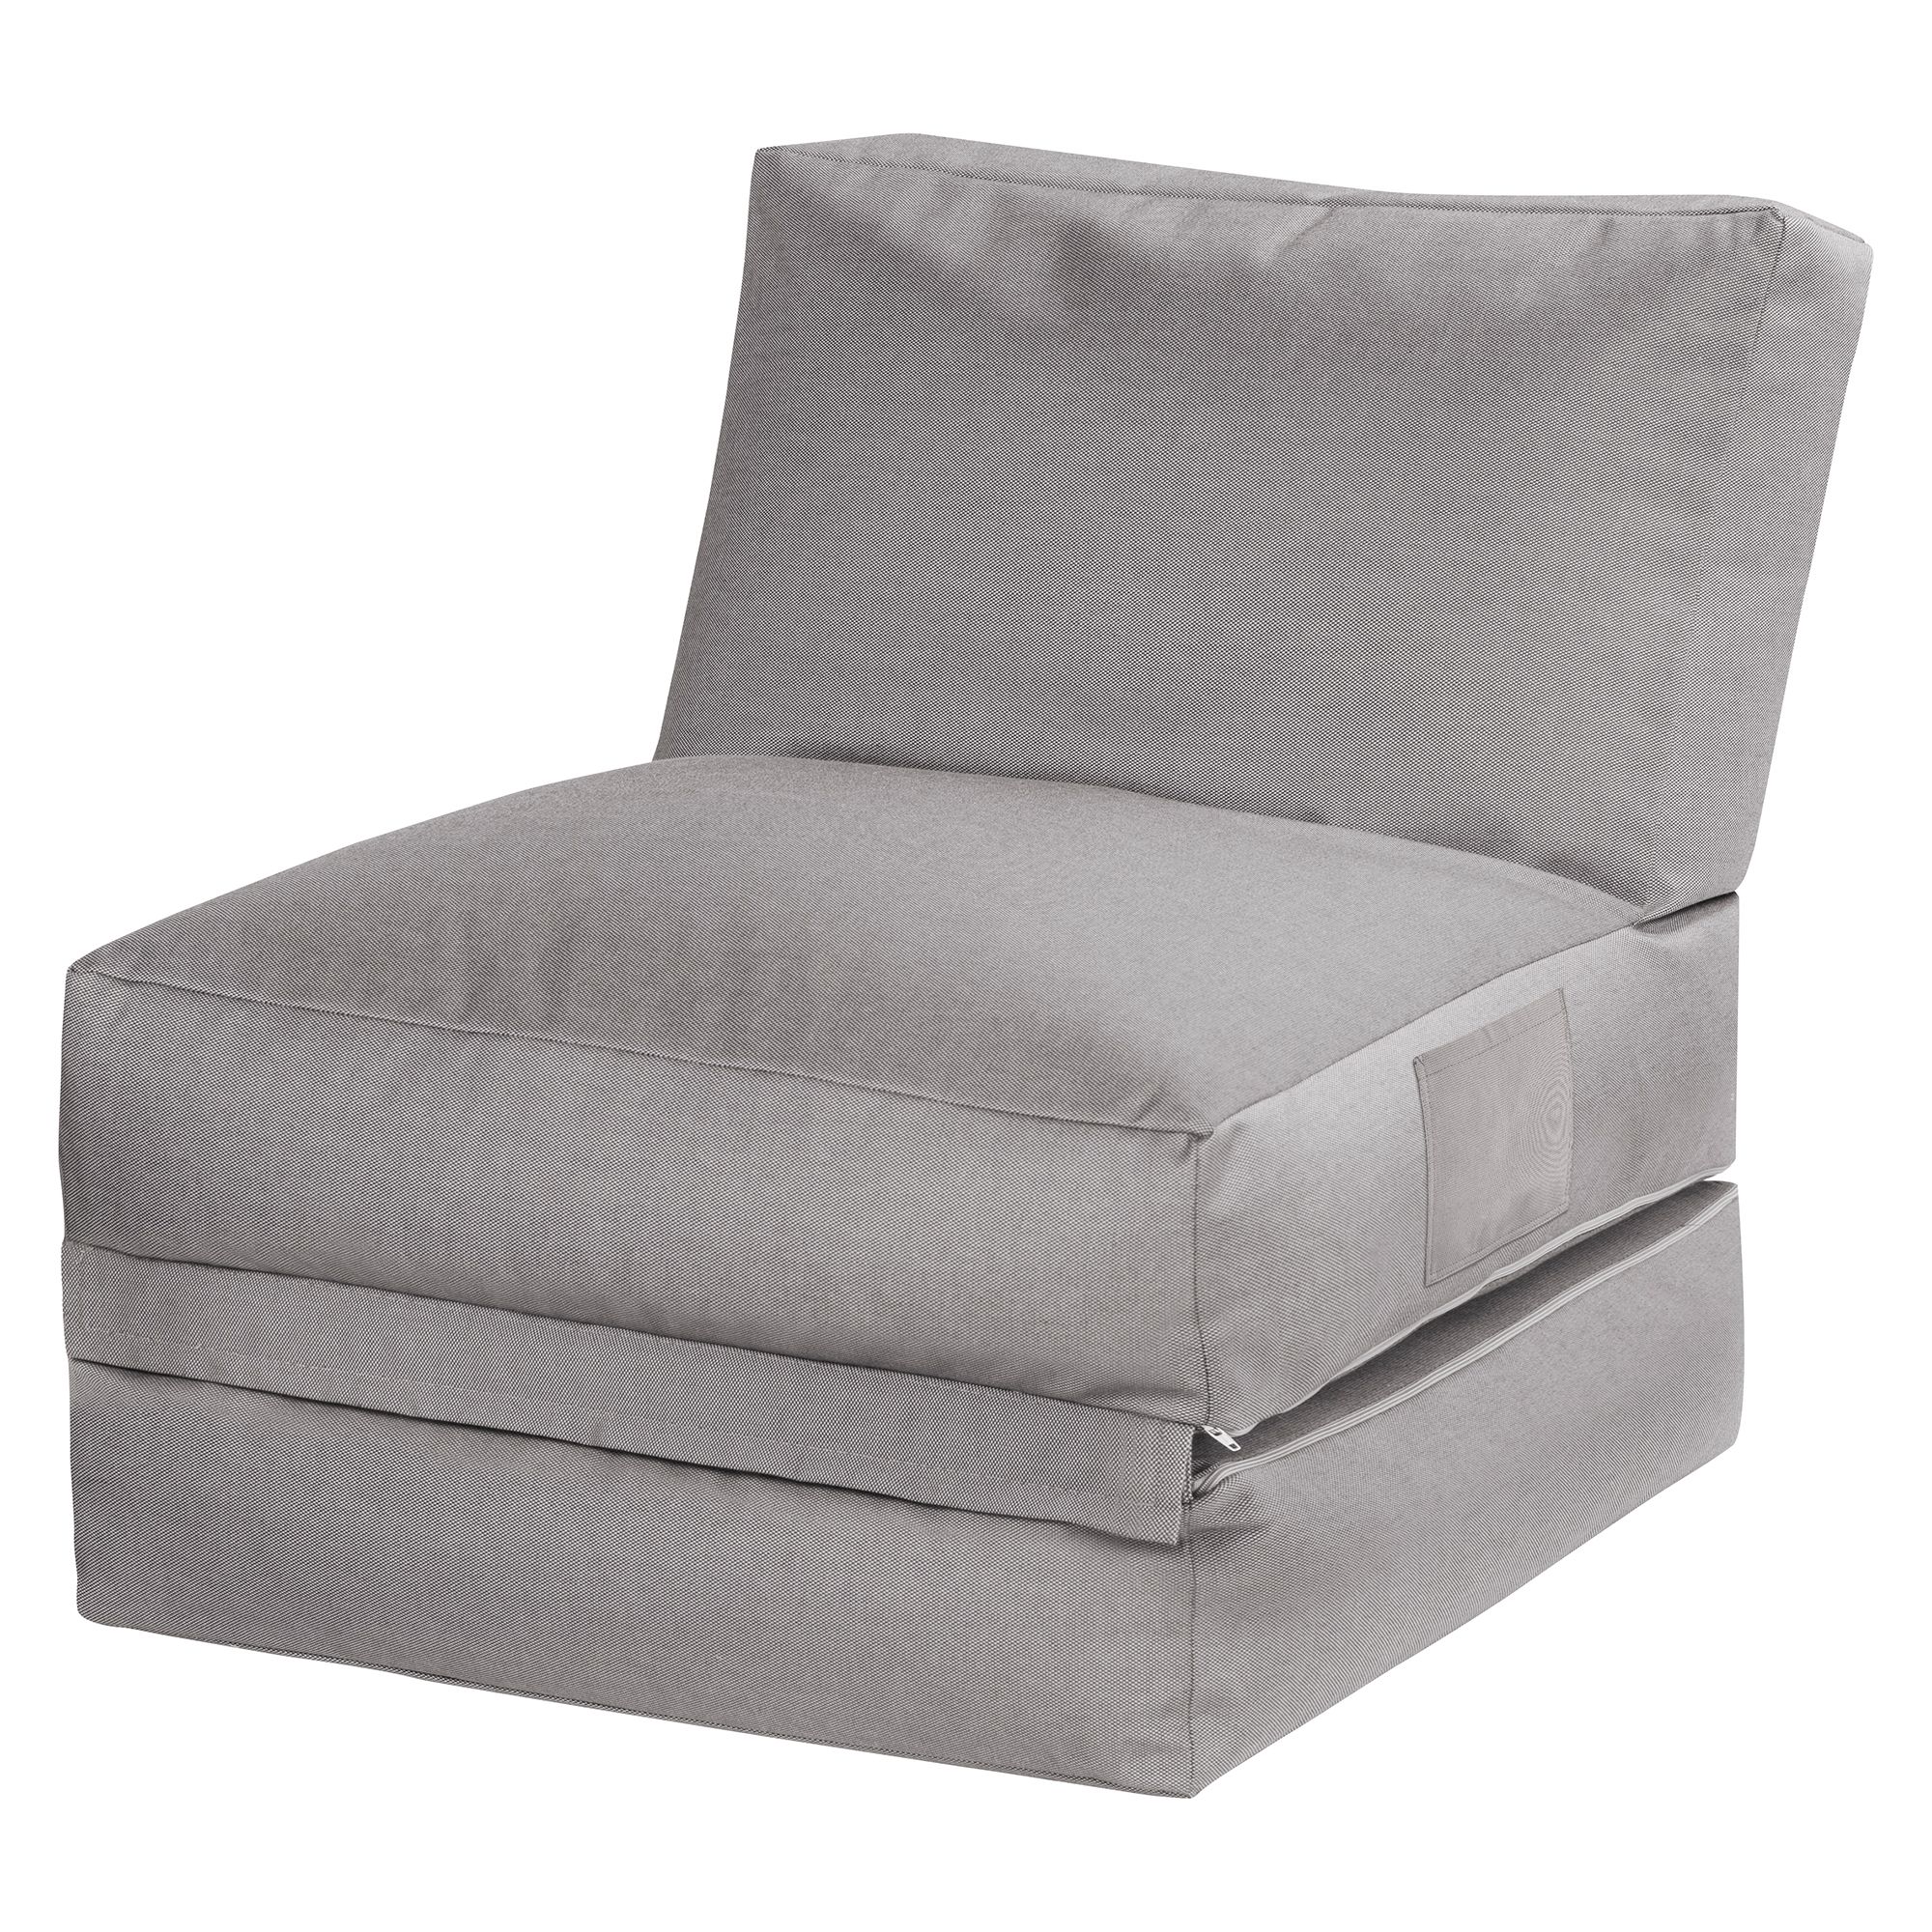 Polyester - Stühle, Hocker & Sitzkissen - Möbel